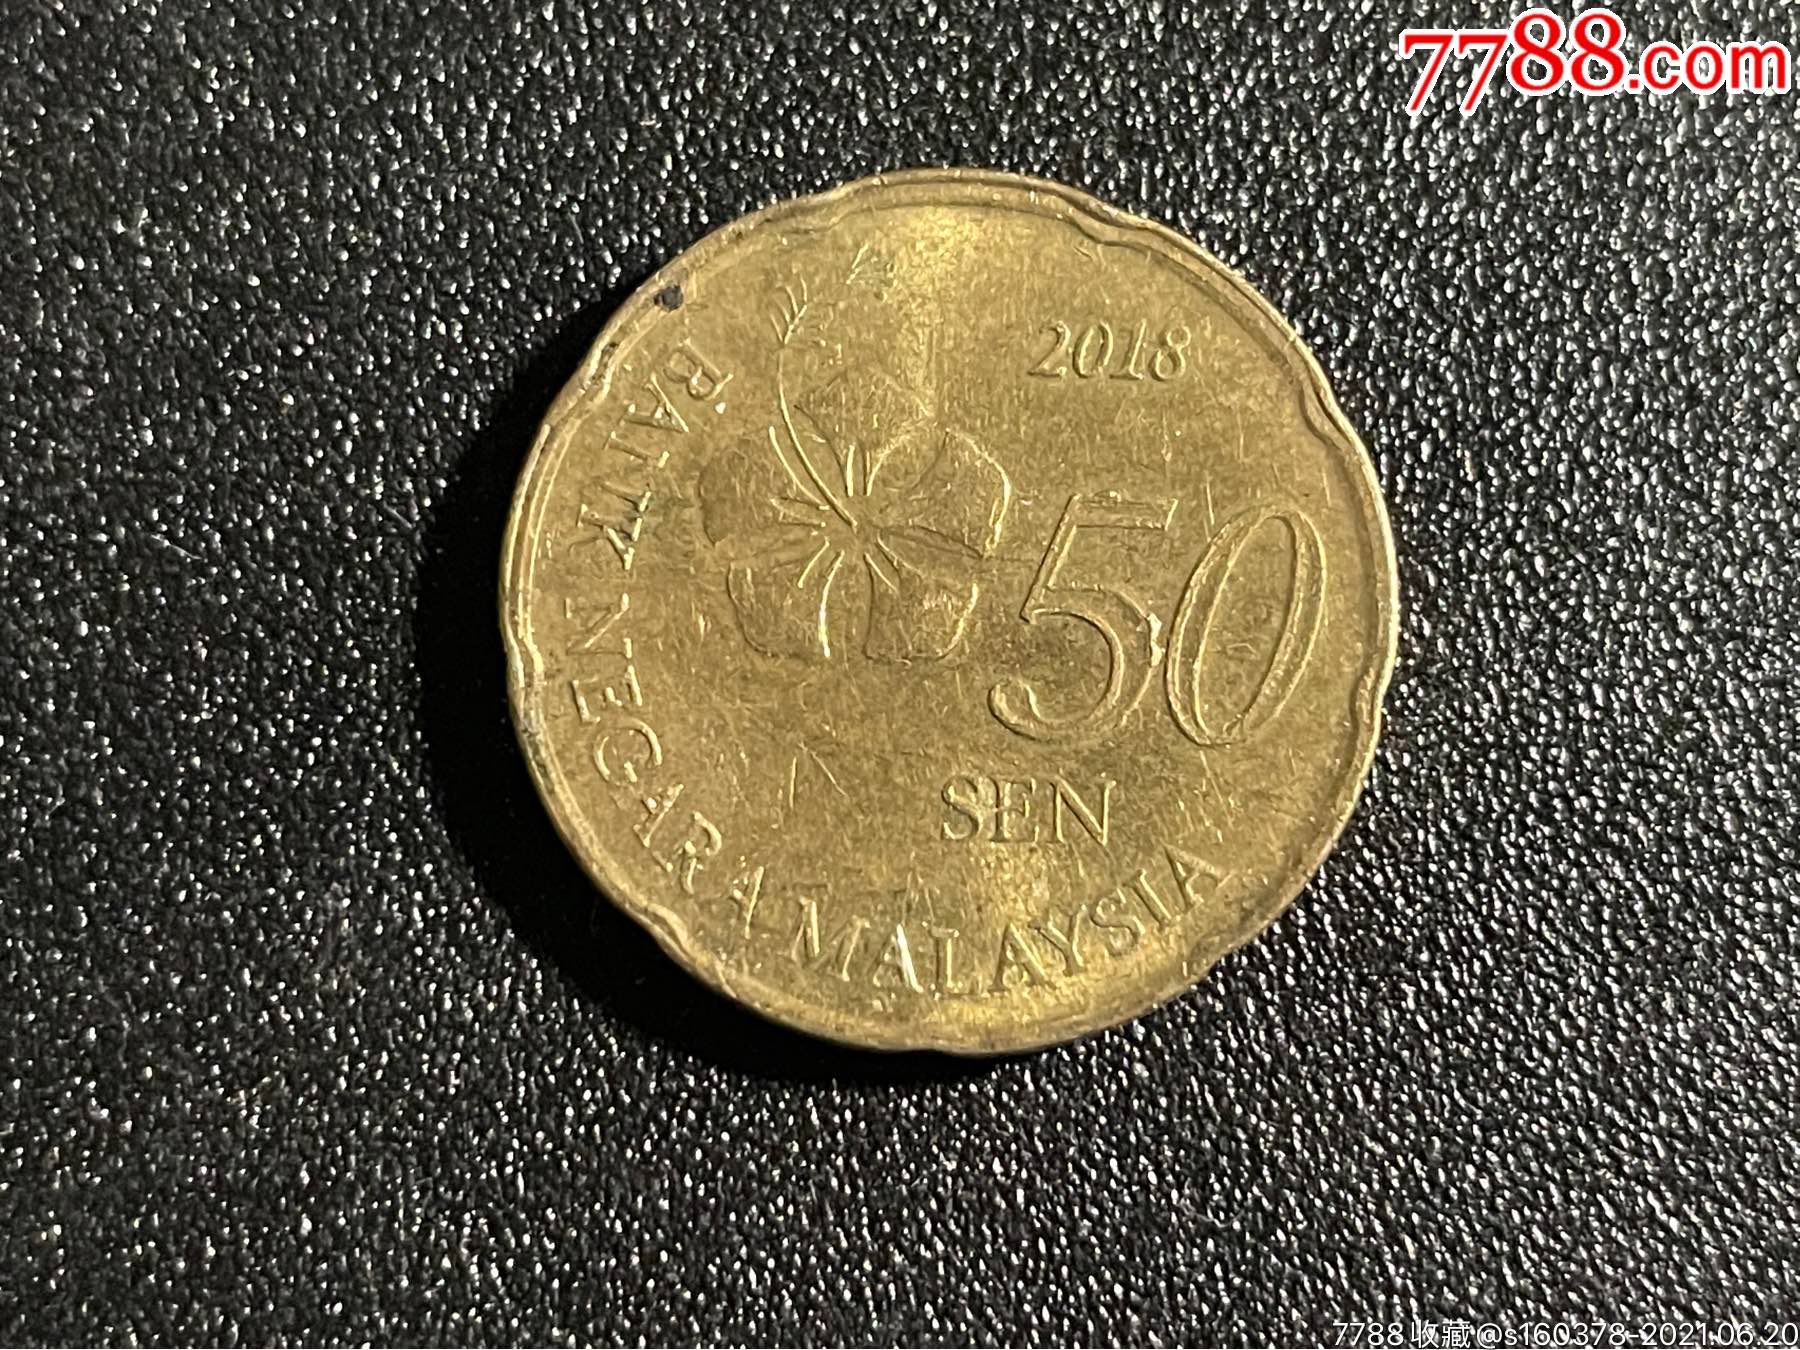 马来西亚50硬币图片,马来西亚50元硬币图片 - 伤感说说吧